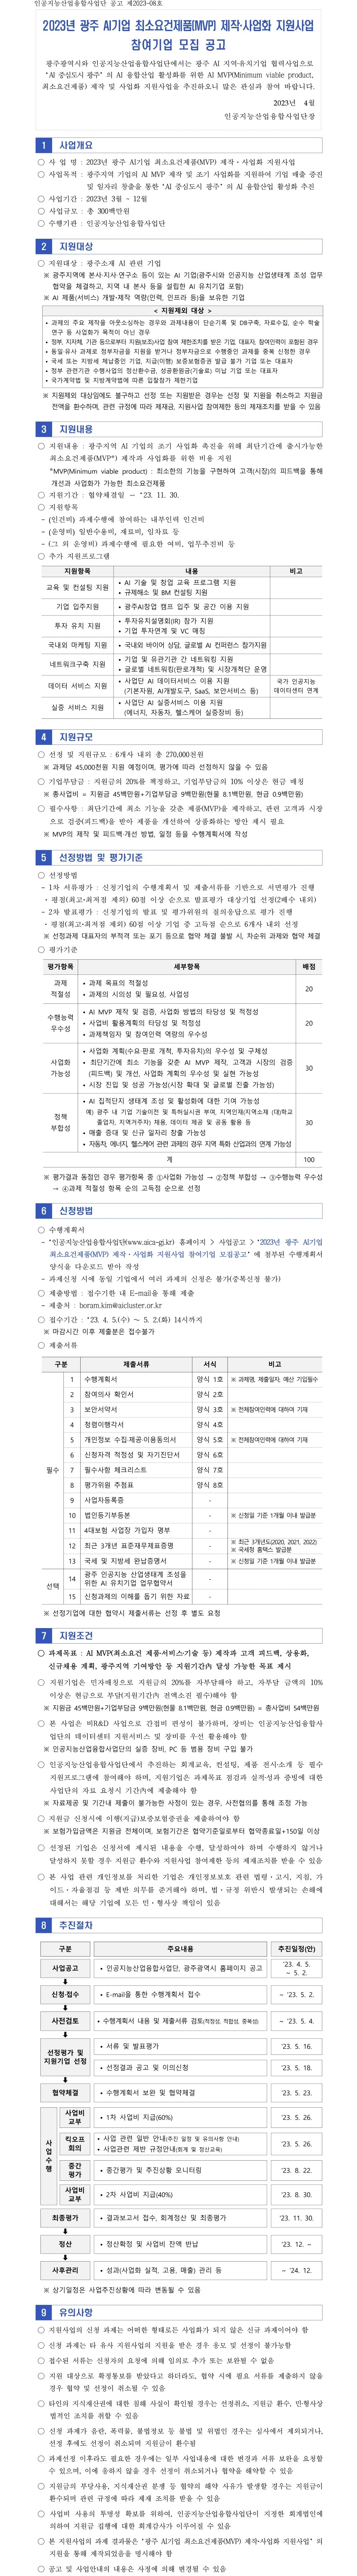 5. 공고게시용_광주 AI기업 최소요건제품(MVP) 제작·사업화 지원사업_최종.jpg